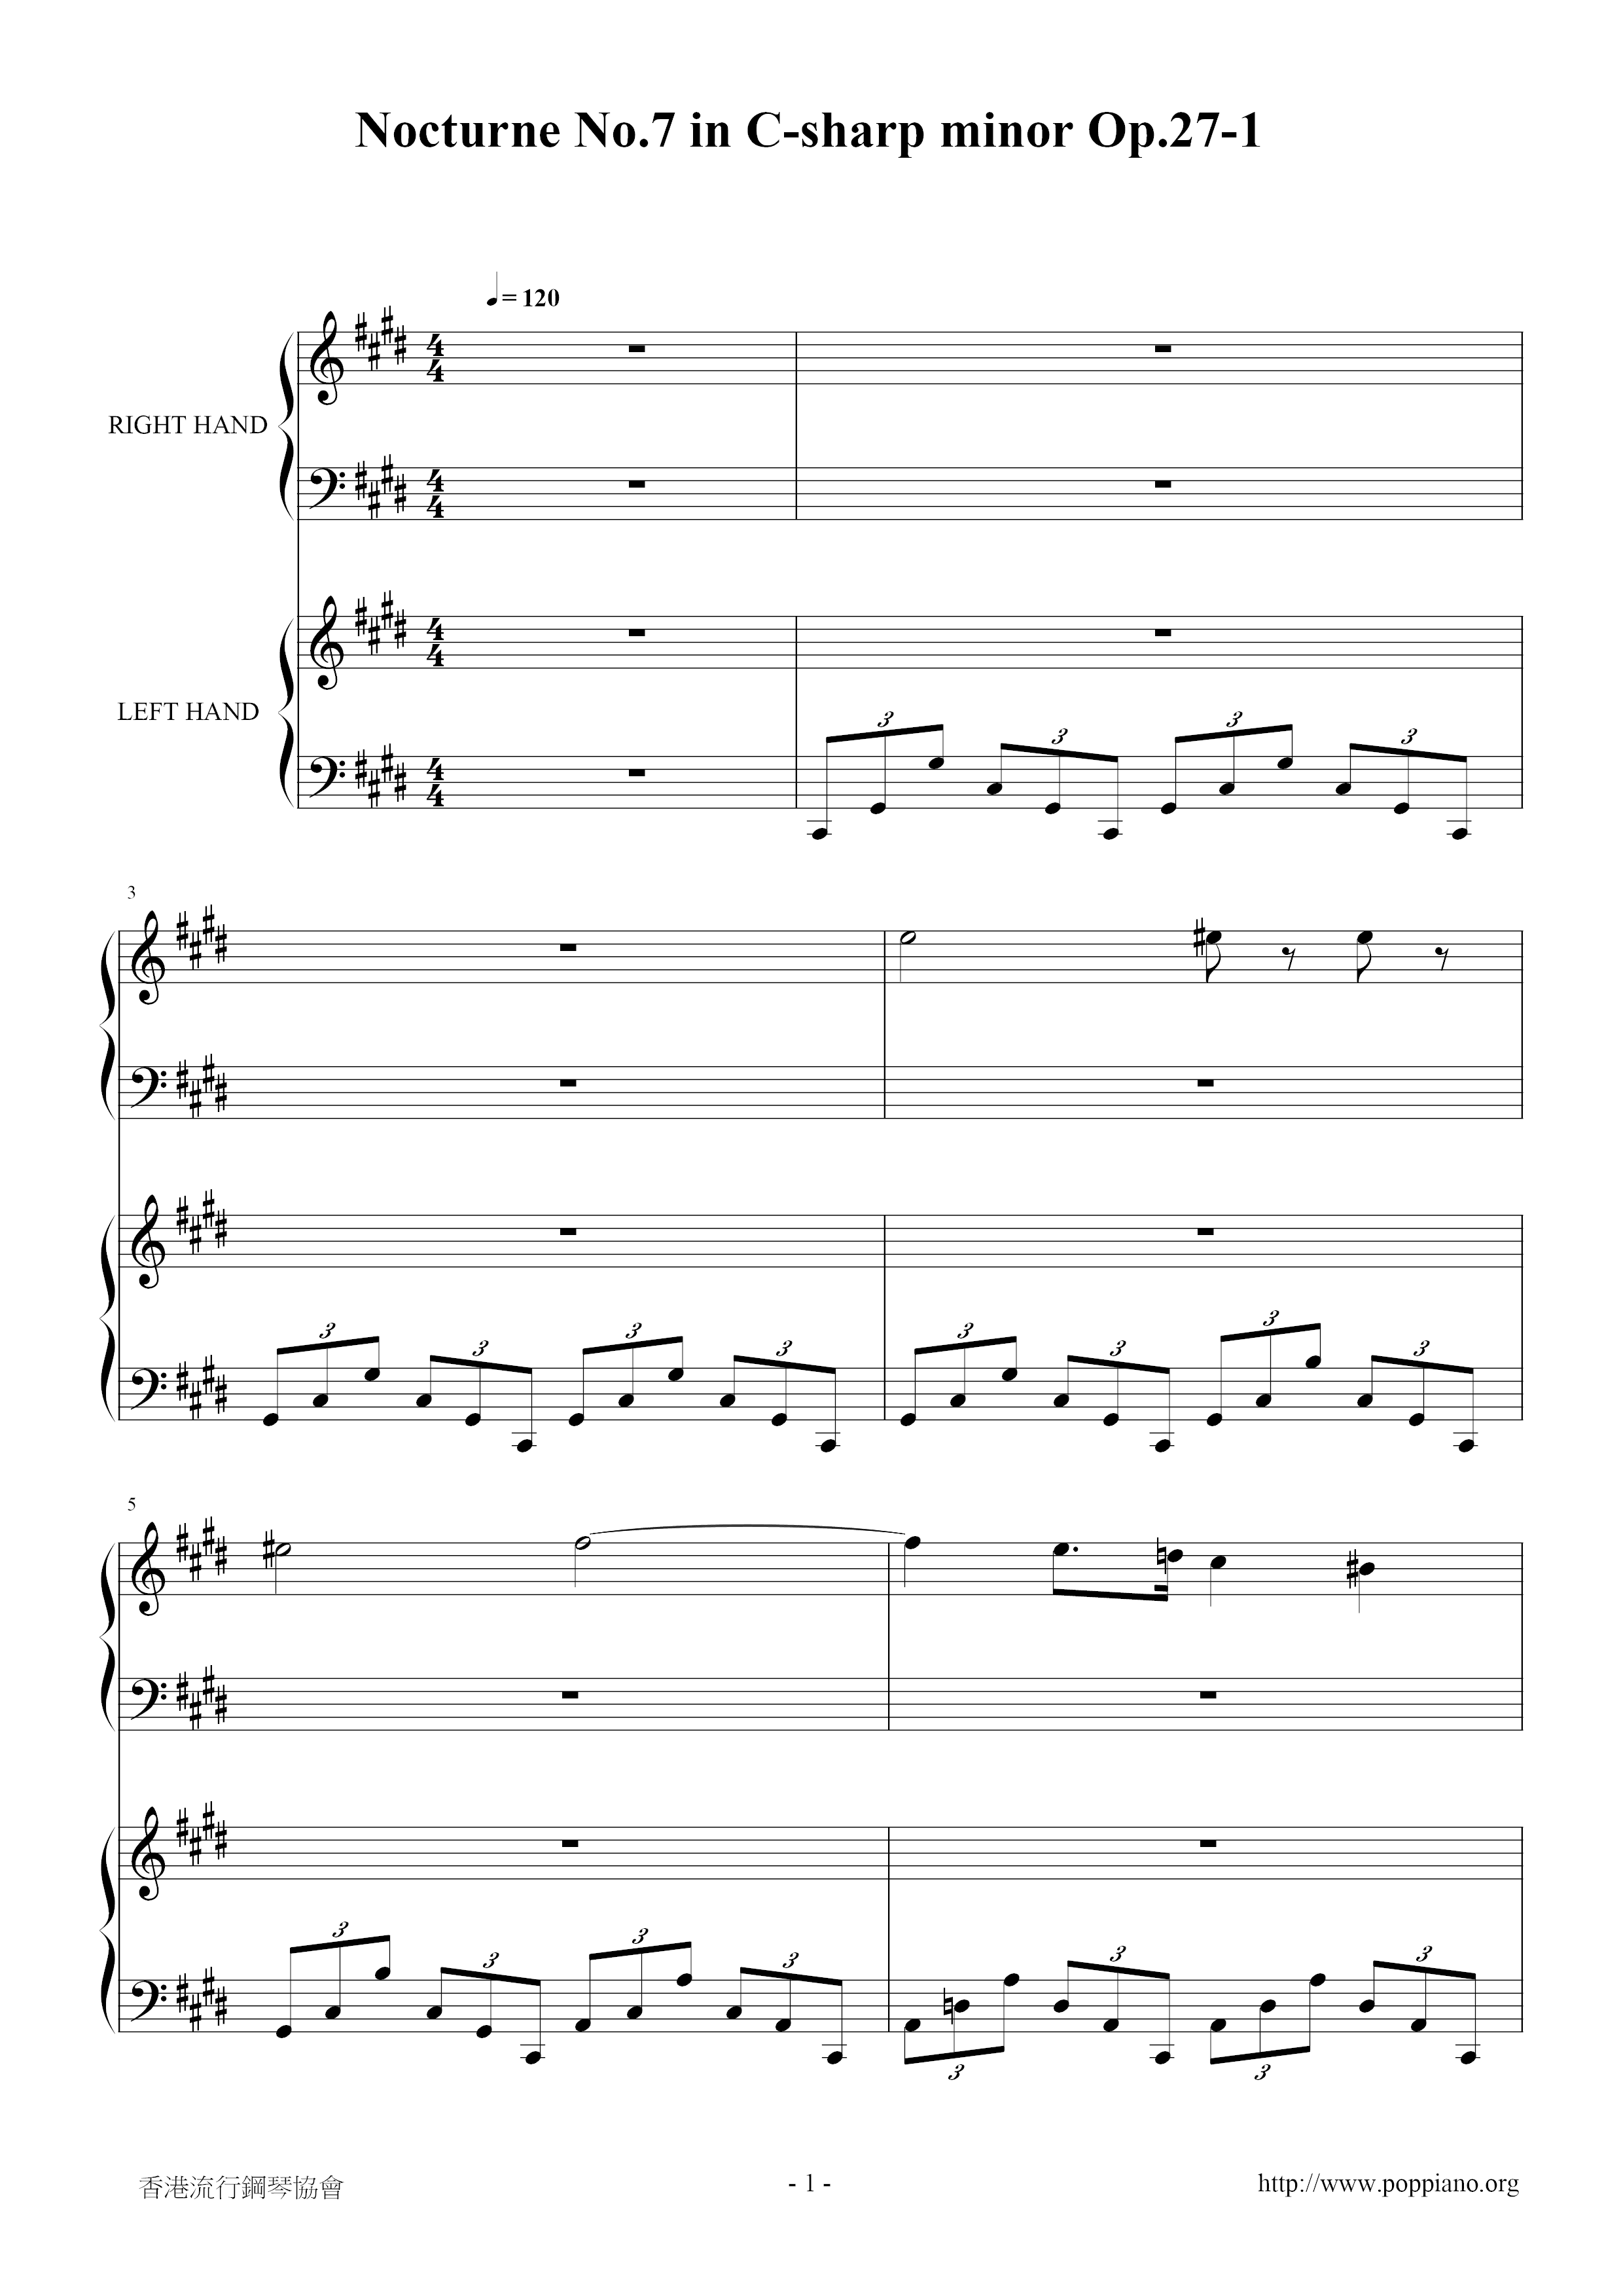 Nocturne No. 07, Op. 27-1 in C# Minorピアノ譜